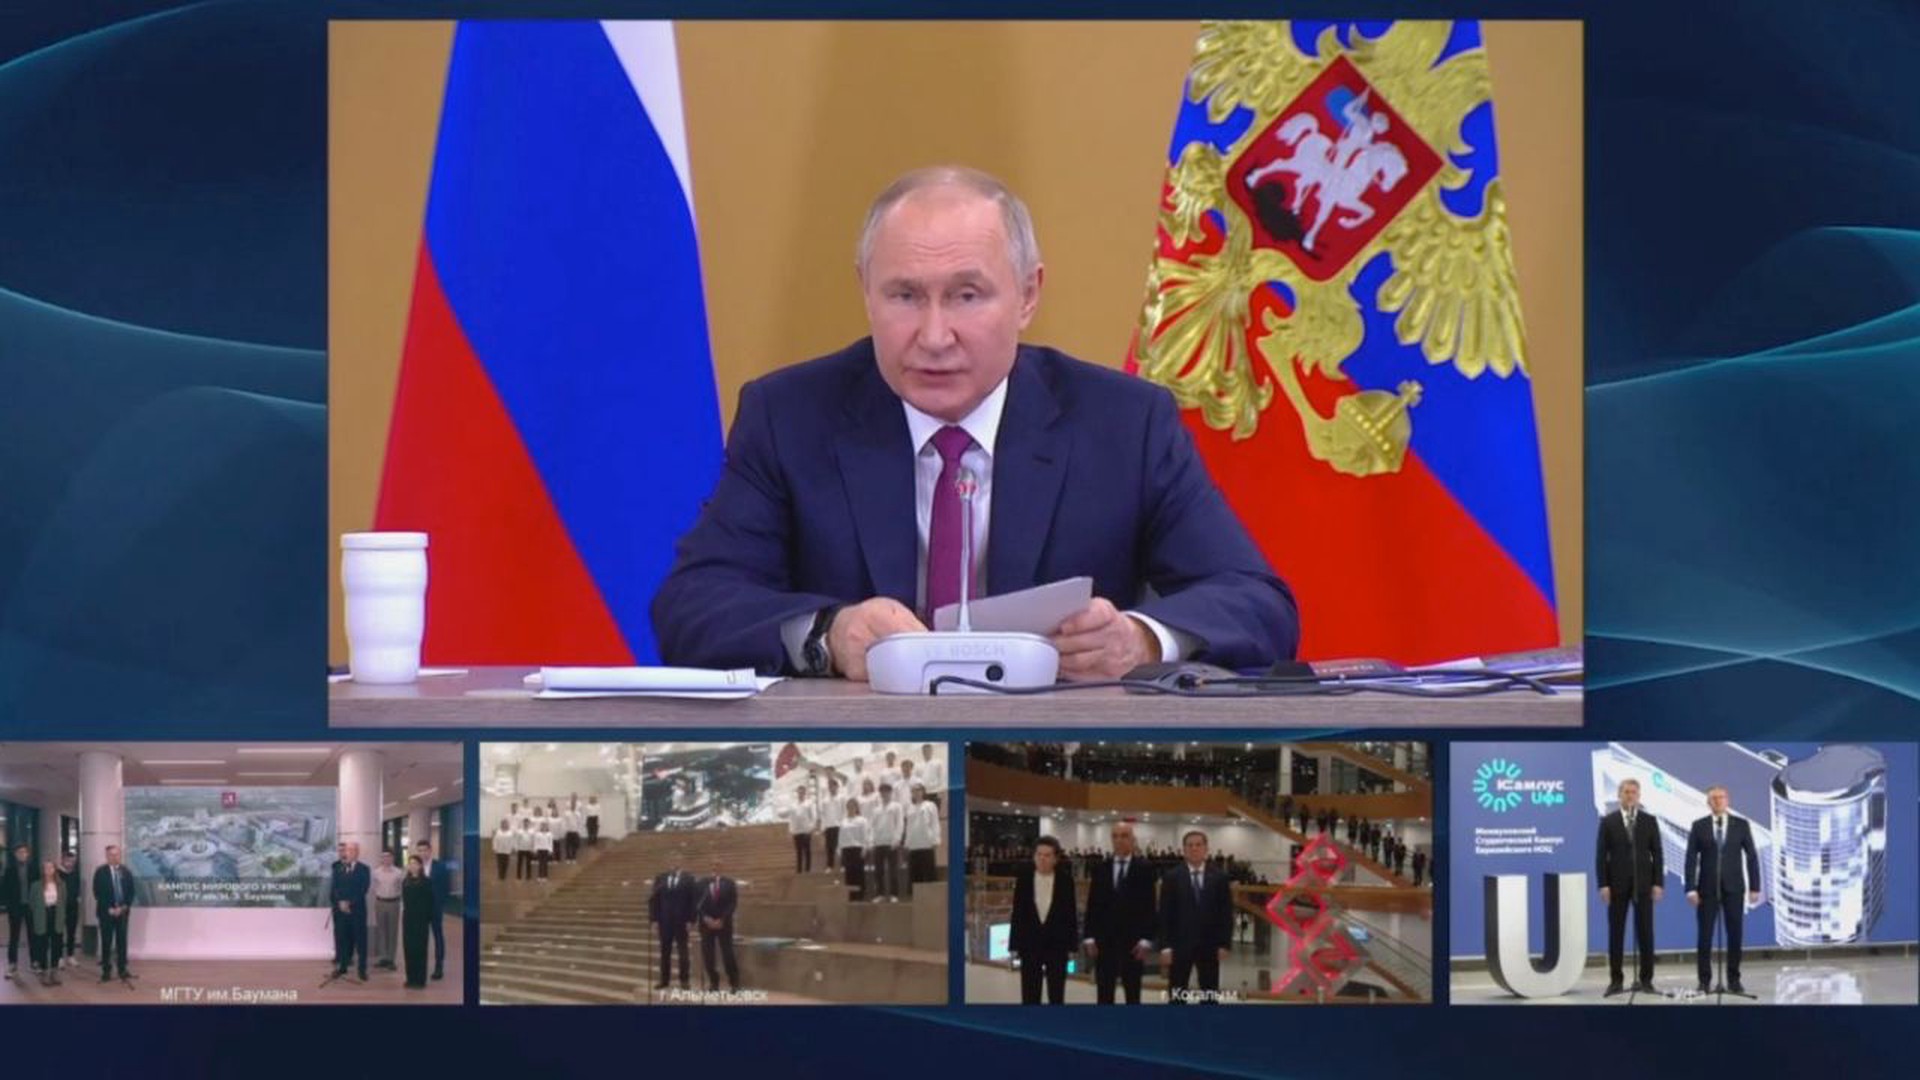 Путин участвует в церемонии открытия кампусов в регионах России